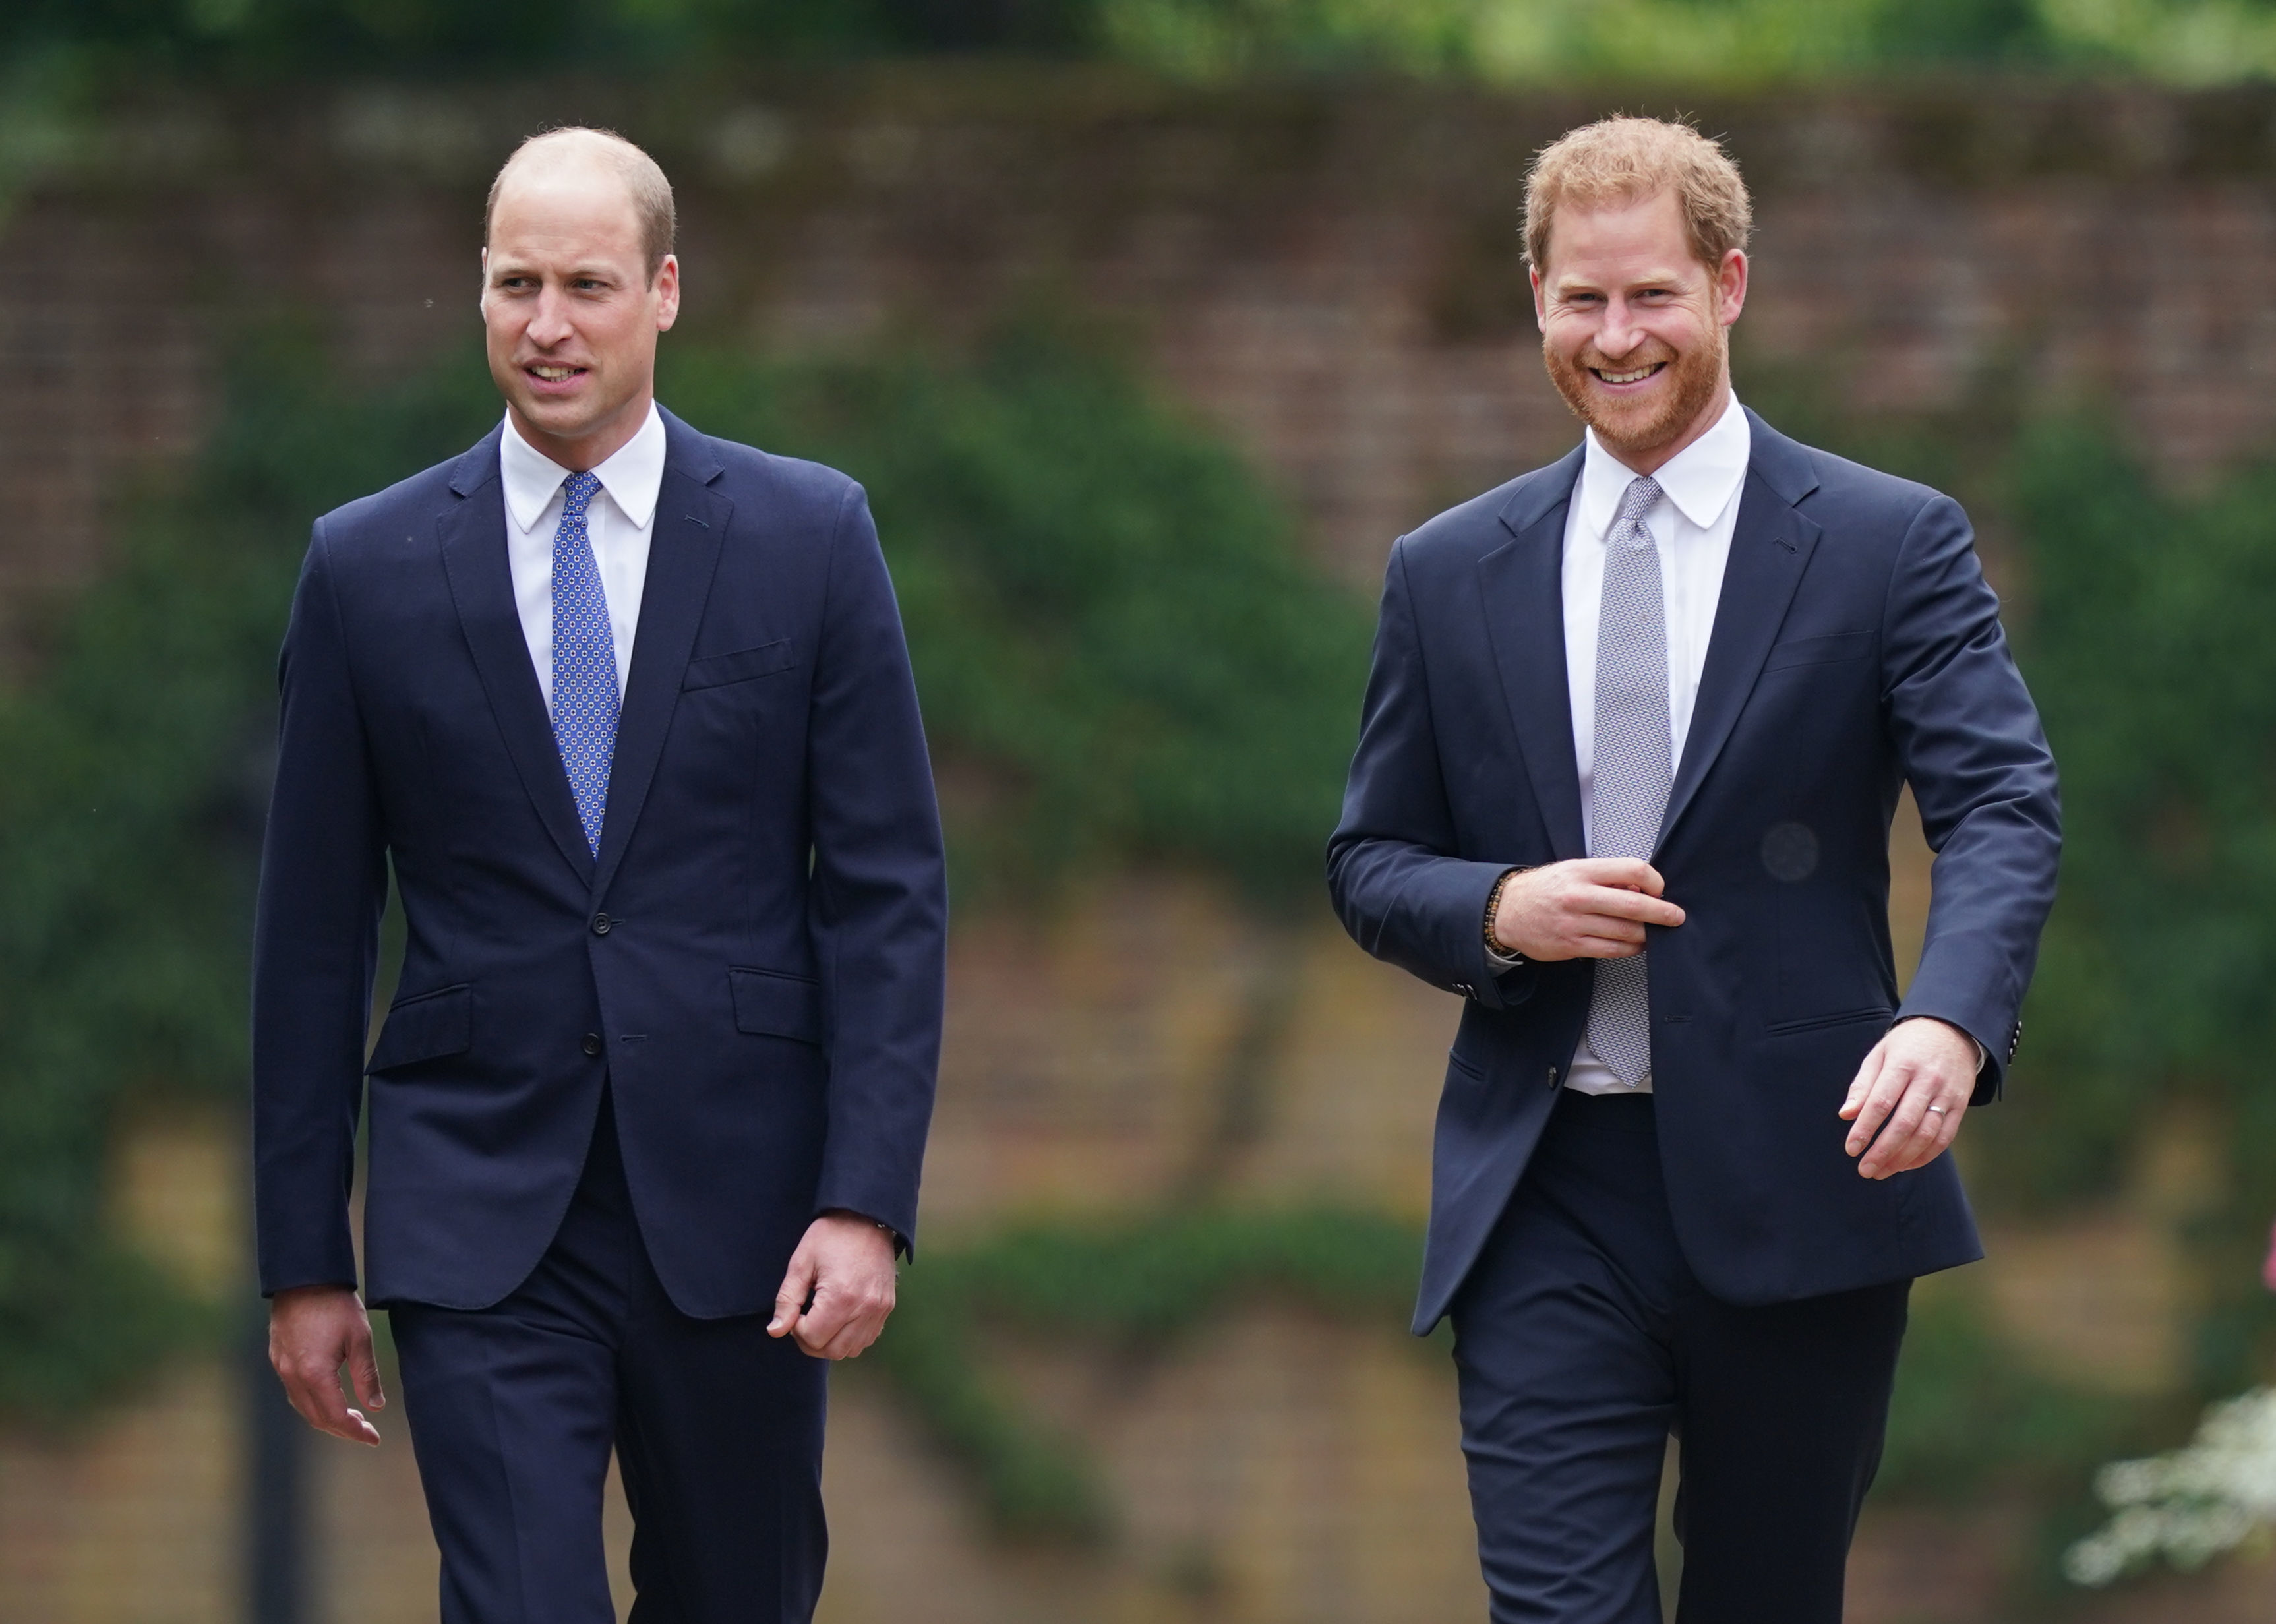 El príncipe William y el príncipe Harry llegan para la inauguración de una estatua en el Jardín Hundido del Palacio de Kensington el 1 de julio de 2021 en Londres, Inglaterra. | Fuente: Getty Images